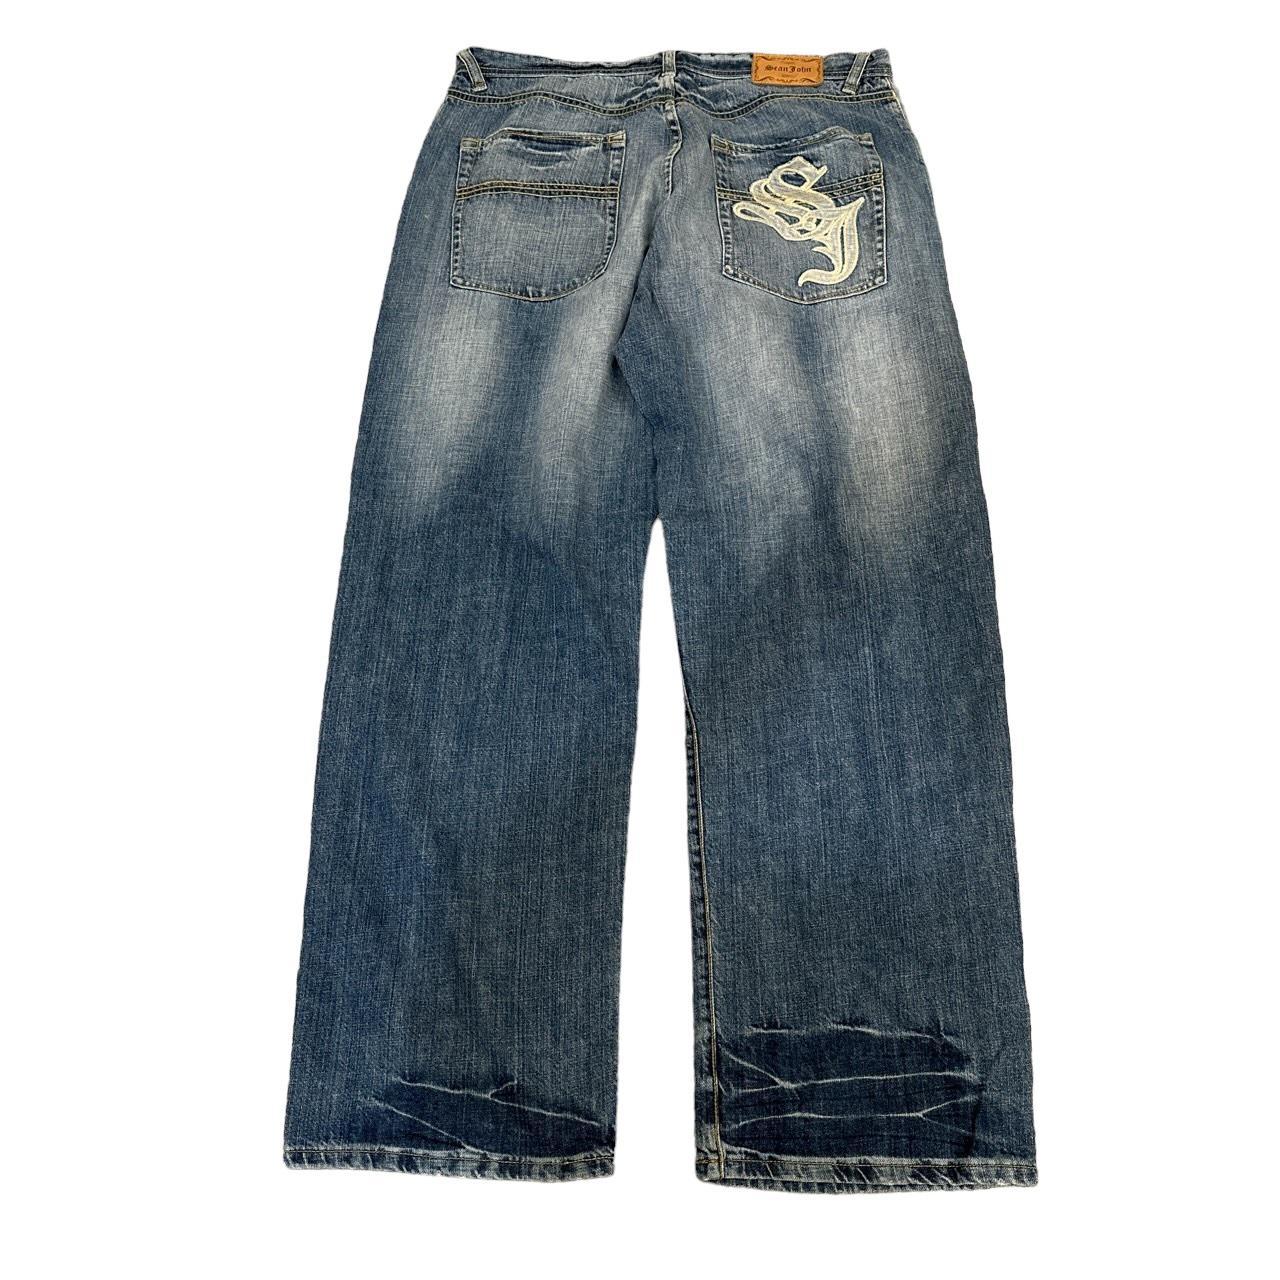 Vintage 2000s Y2k embroidered jeans Similar to... - Depop